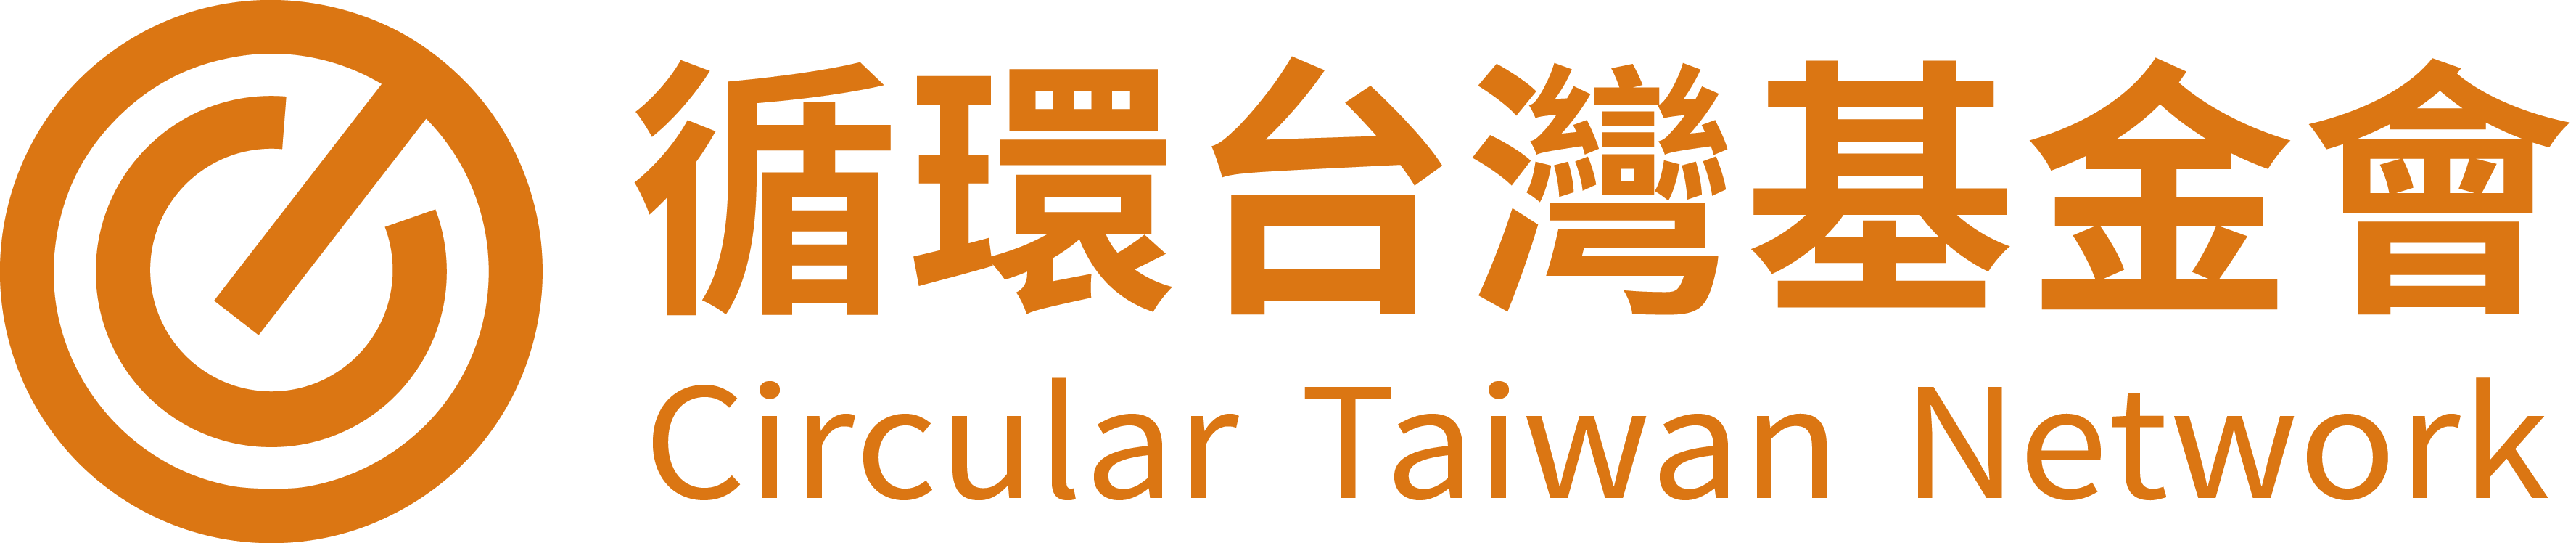 循環台灣基金會標題圖